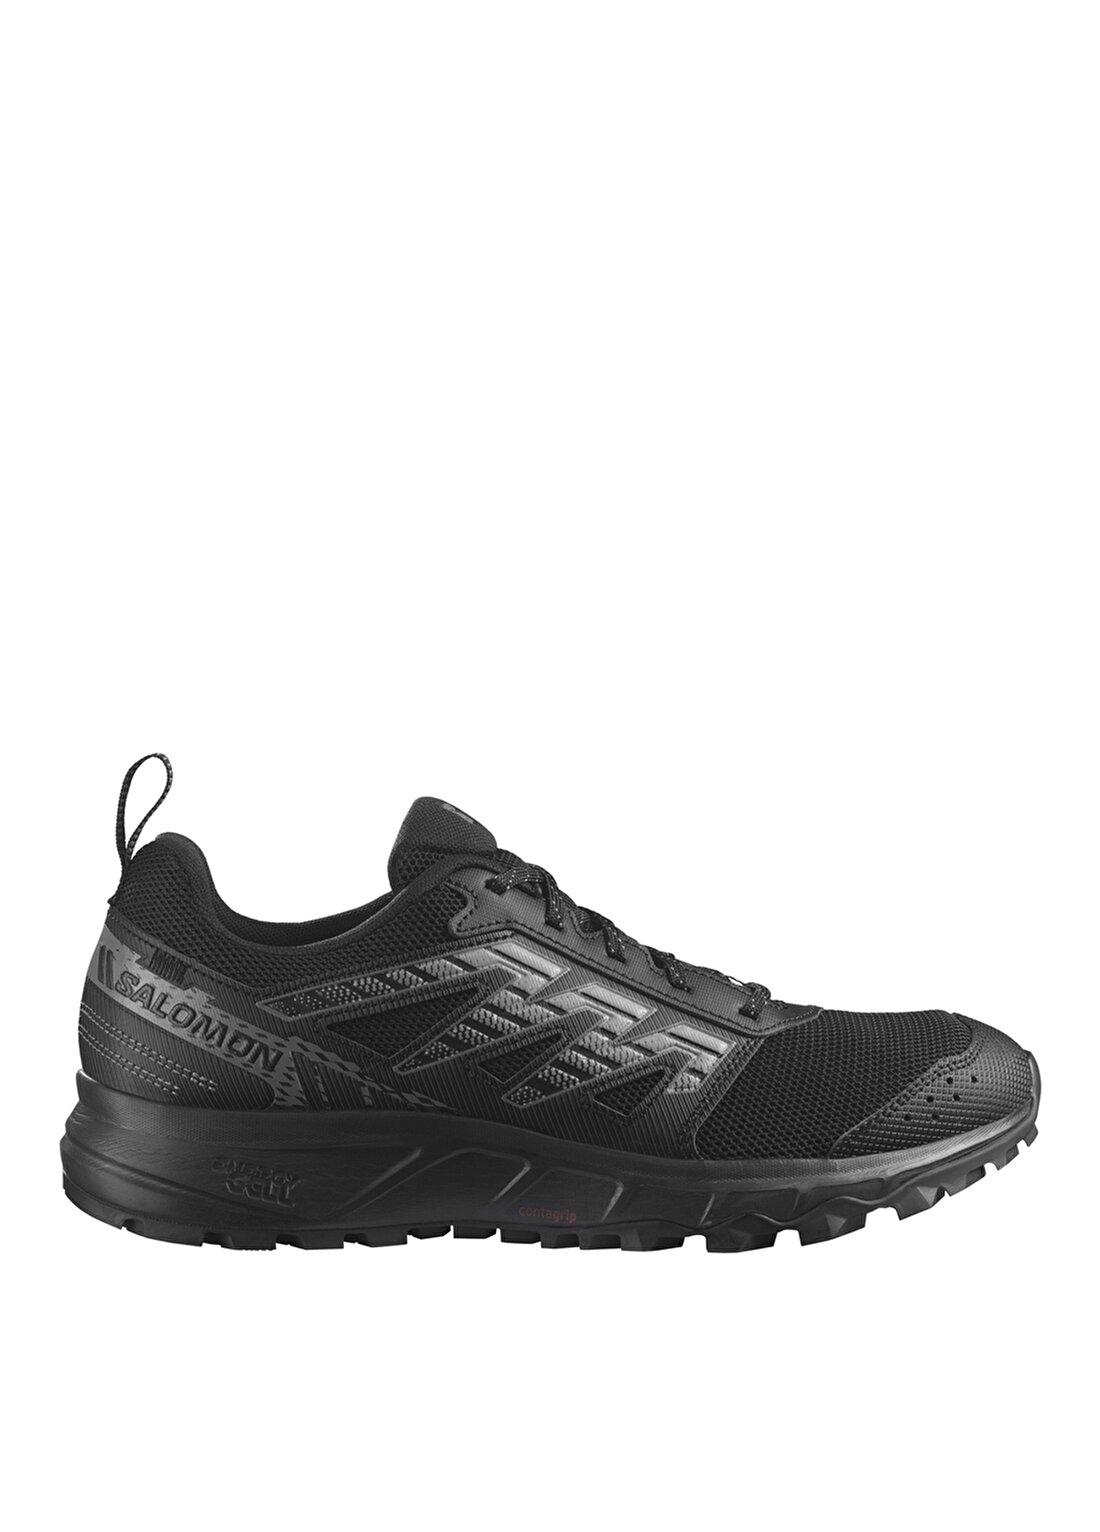 Salomon Siyah Erkek Outdoor Ayakkabısı L47152500_WANDER